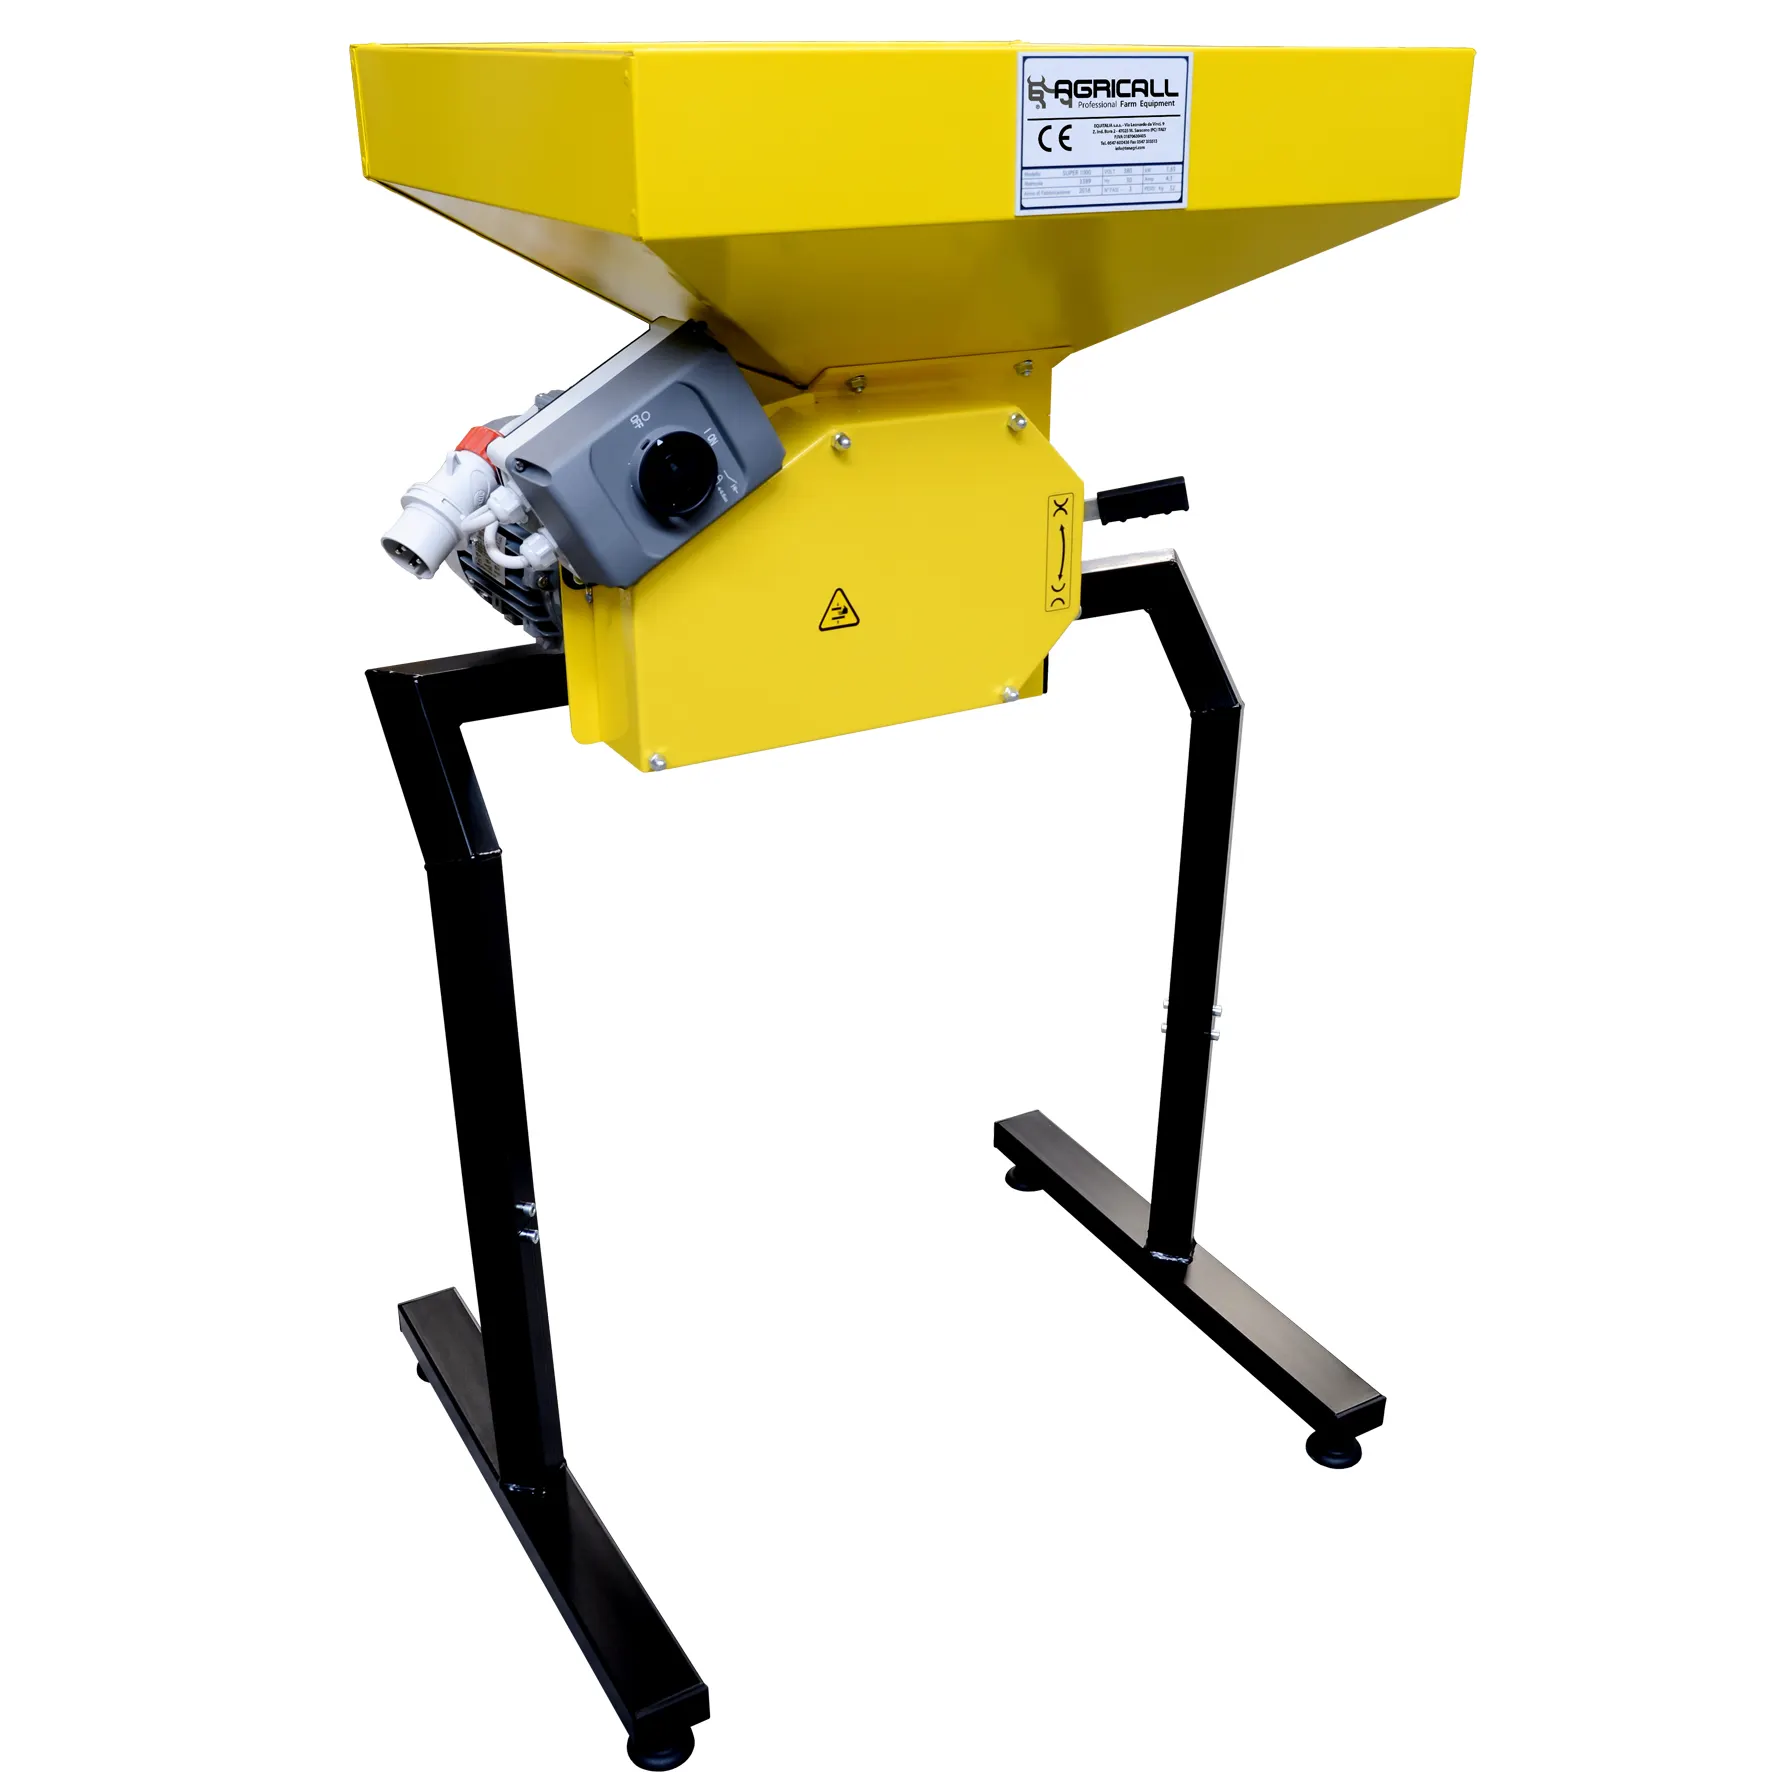 Trituradora eléctrica para la preparación de alimentos de granos animales trituradora digestible superior para uso ganadero hecha en Italia